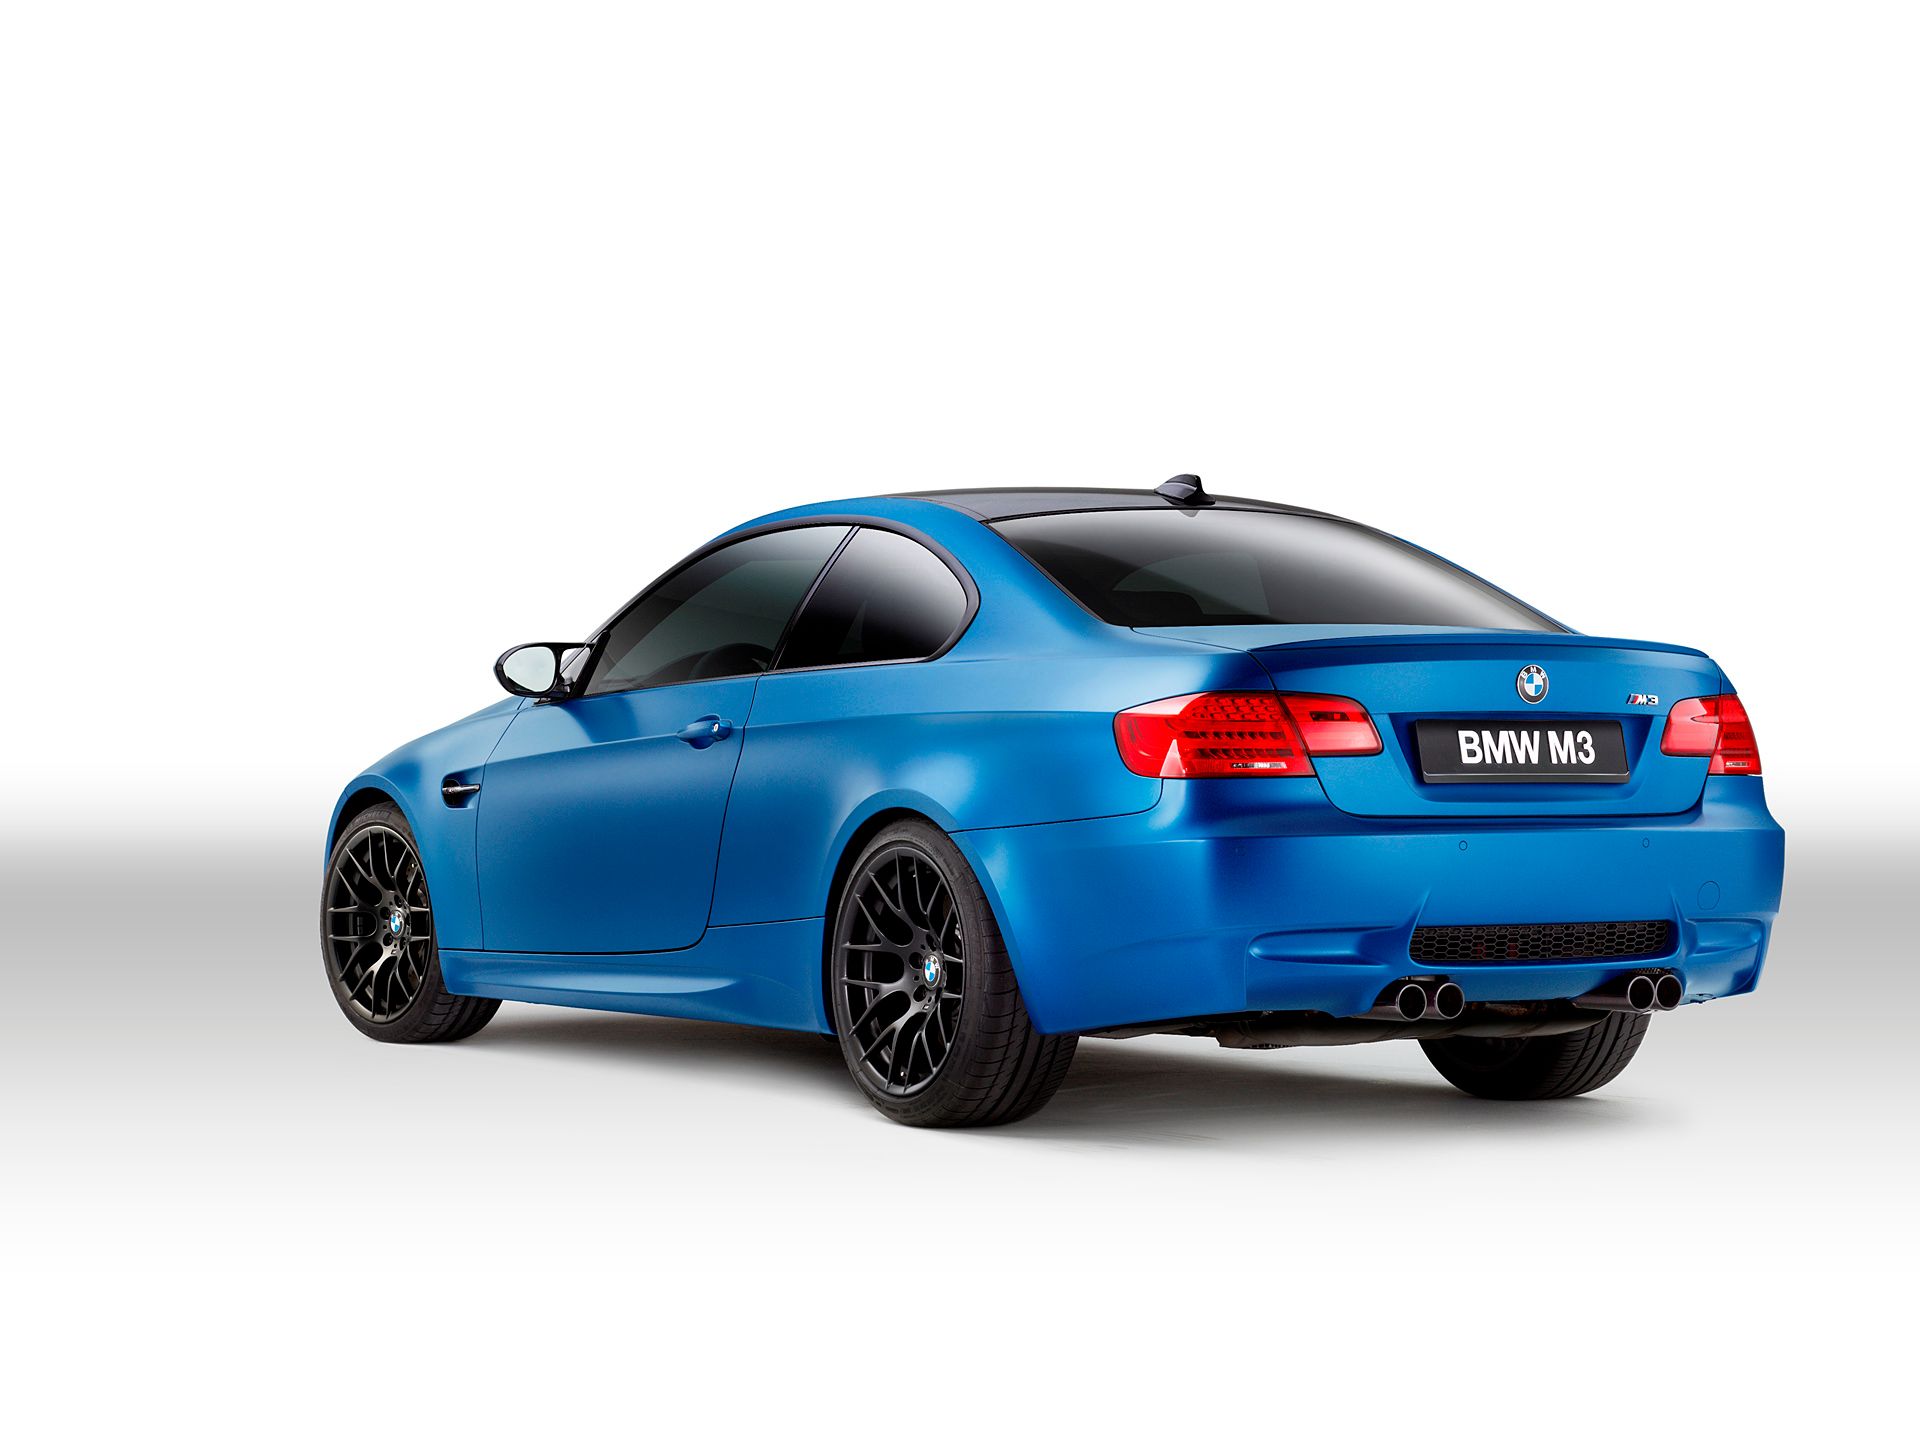 2013-BMW-M3-Frozen-Edition-002-1440